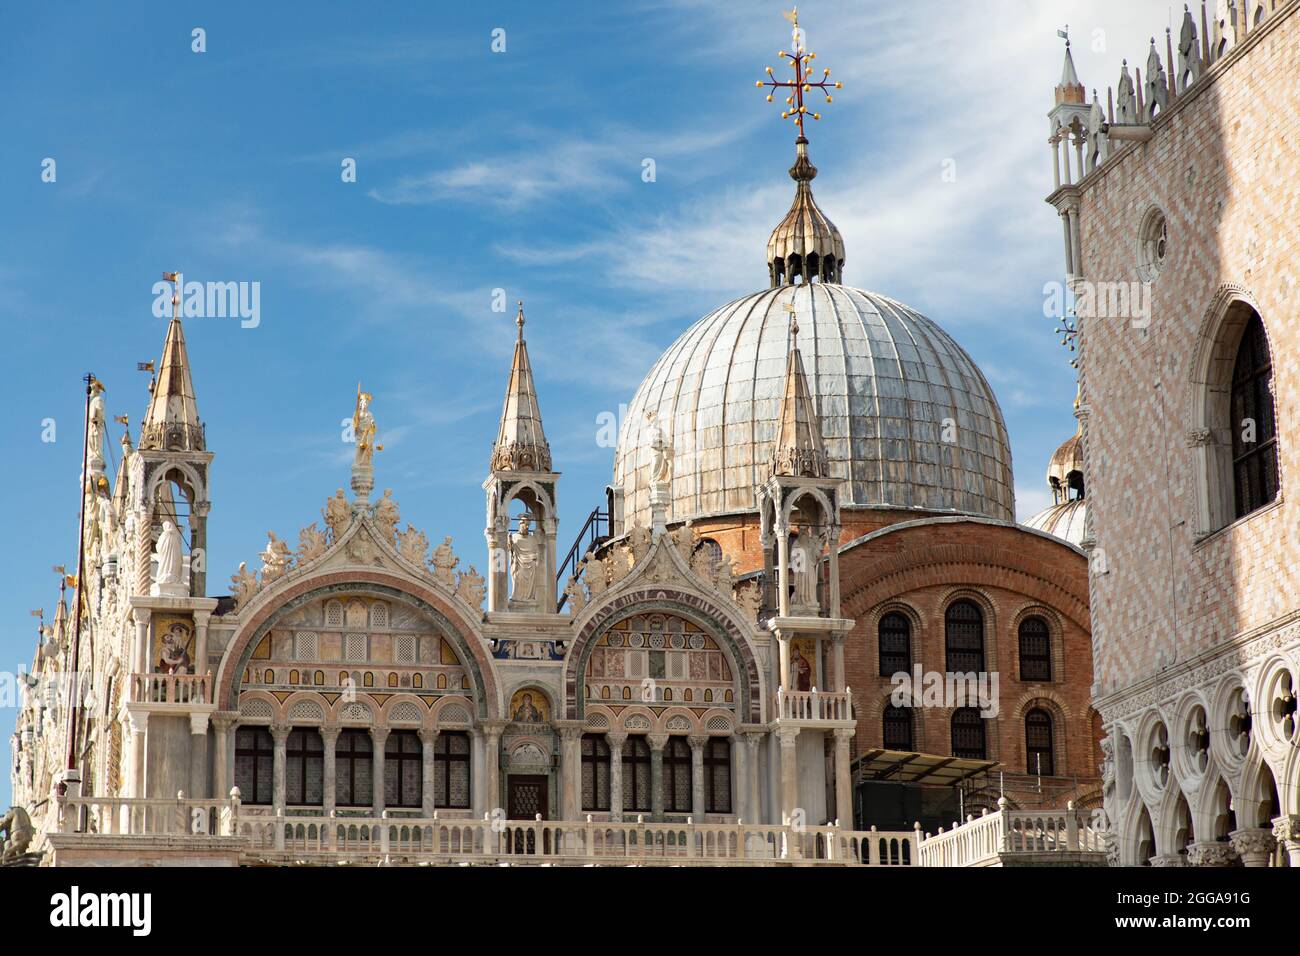 Particolare artitico delle torri e cupole della Basilica di San Marco a Venezia- Città italiane e da visitare punti di interesse turistico-cultural Banque D'Images